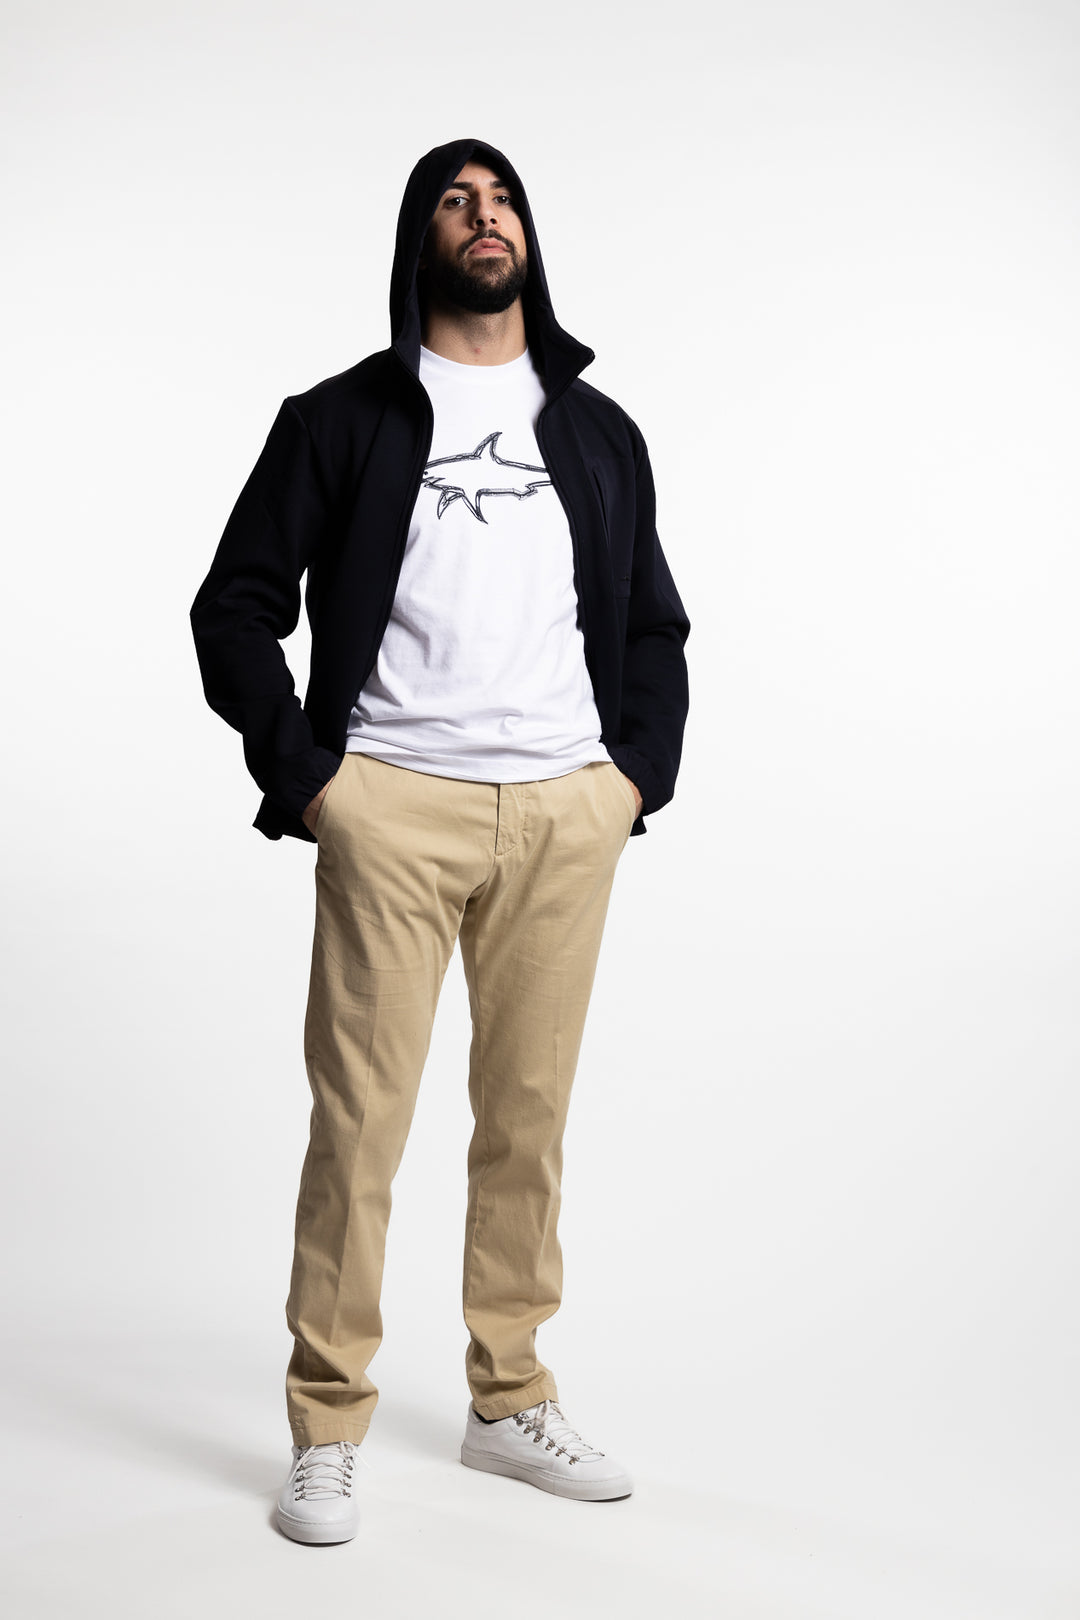 Polyester Full-Zip Sweatshirt Navy